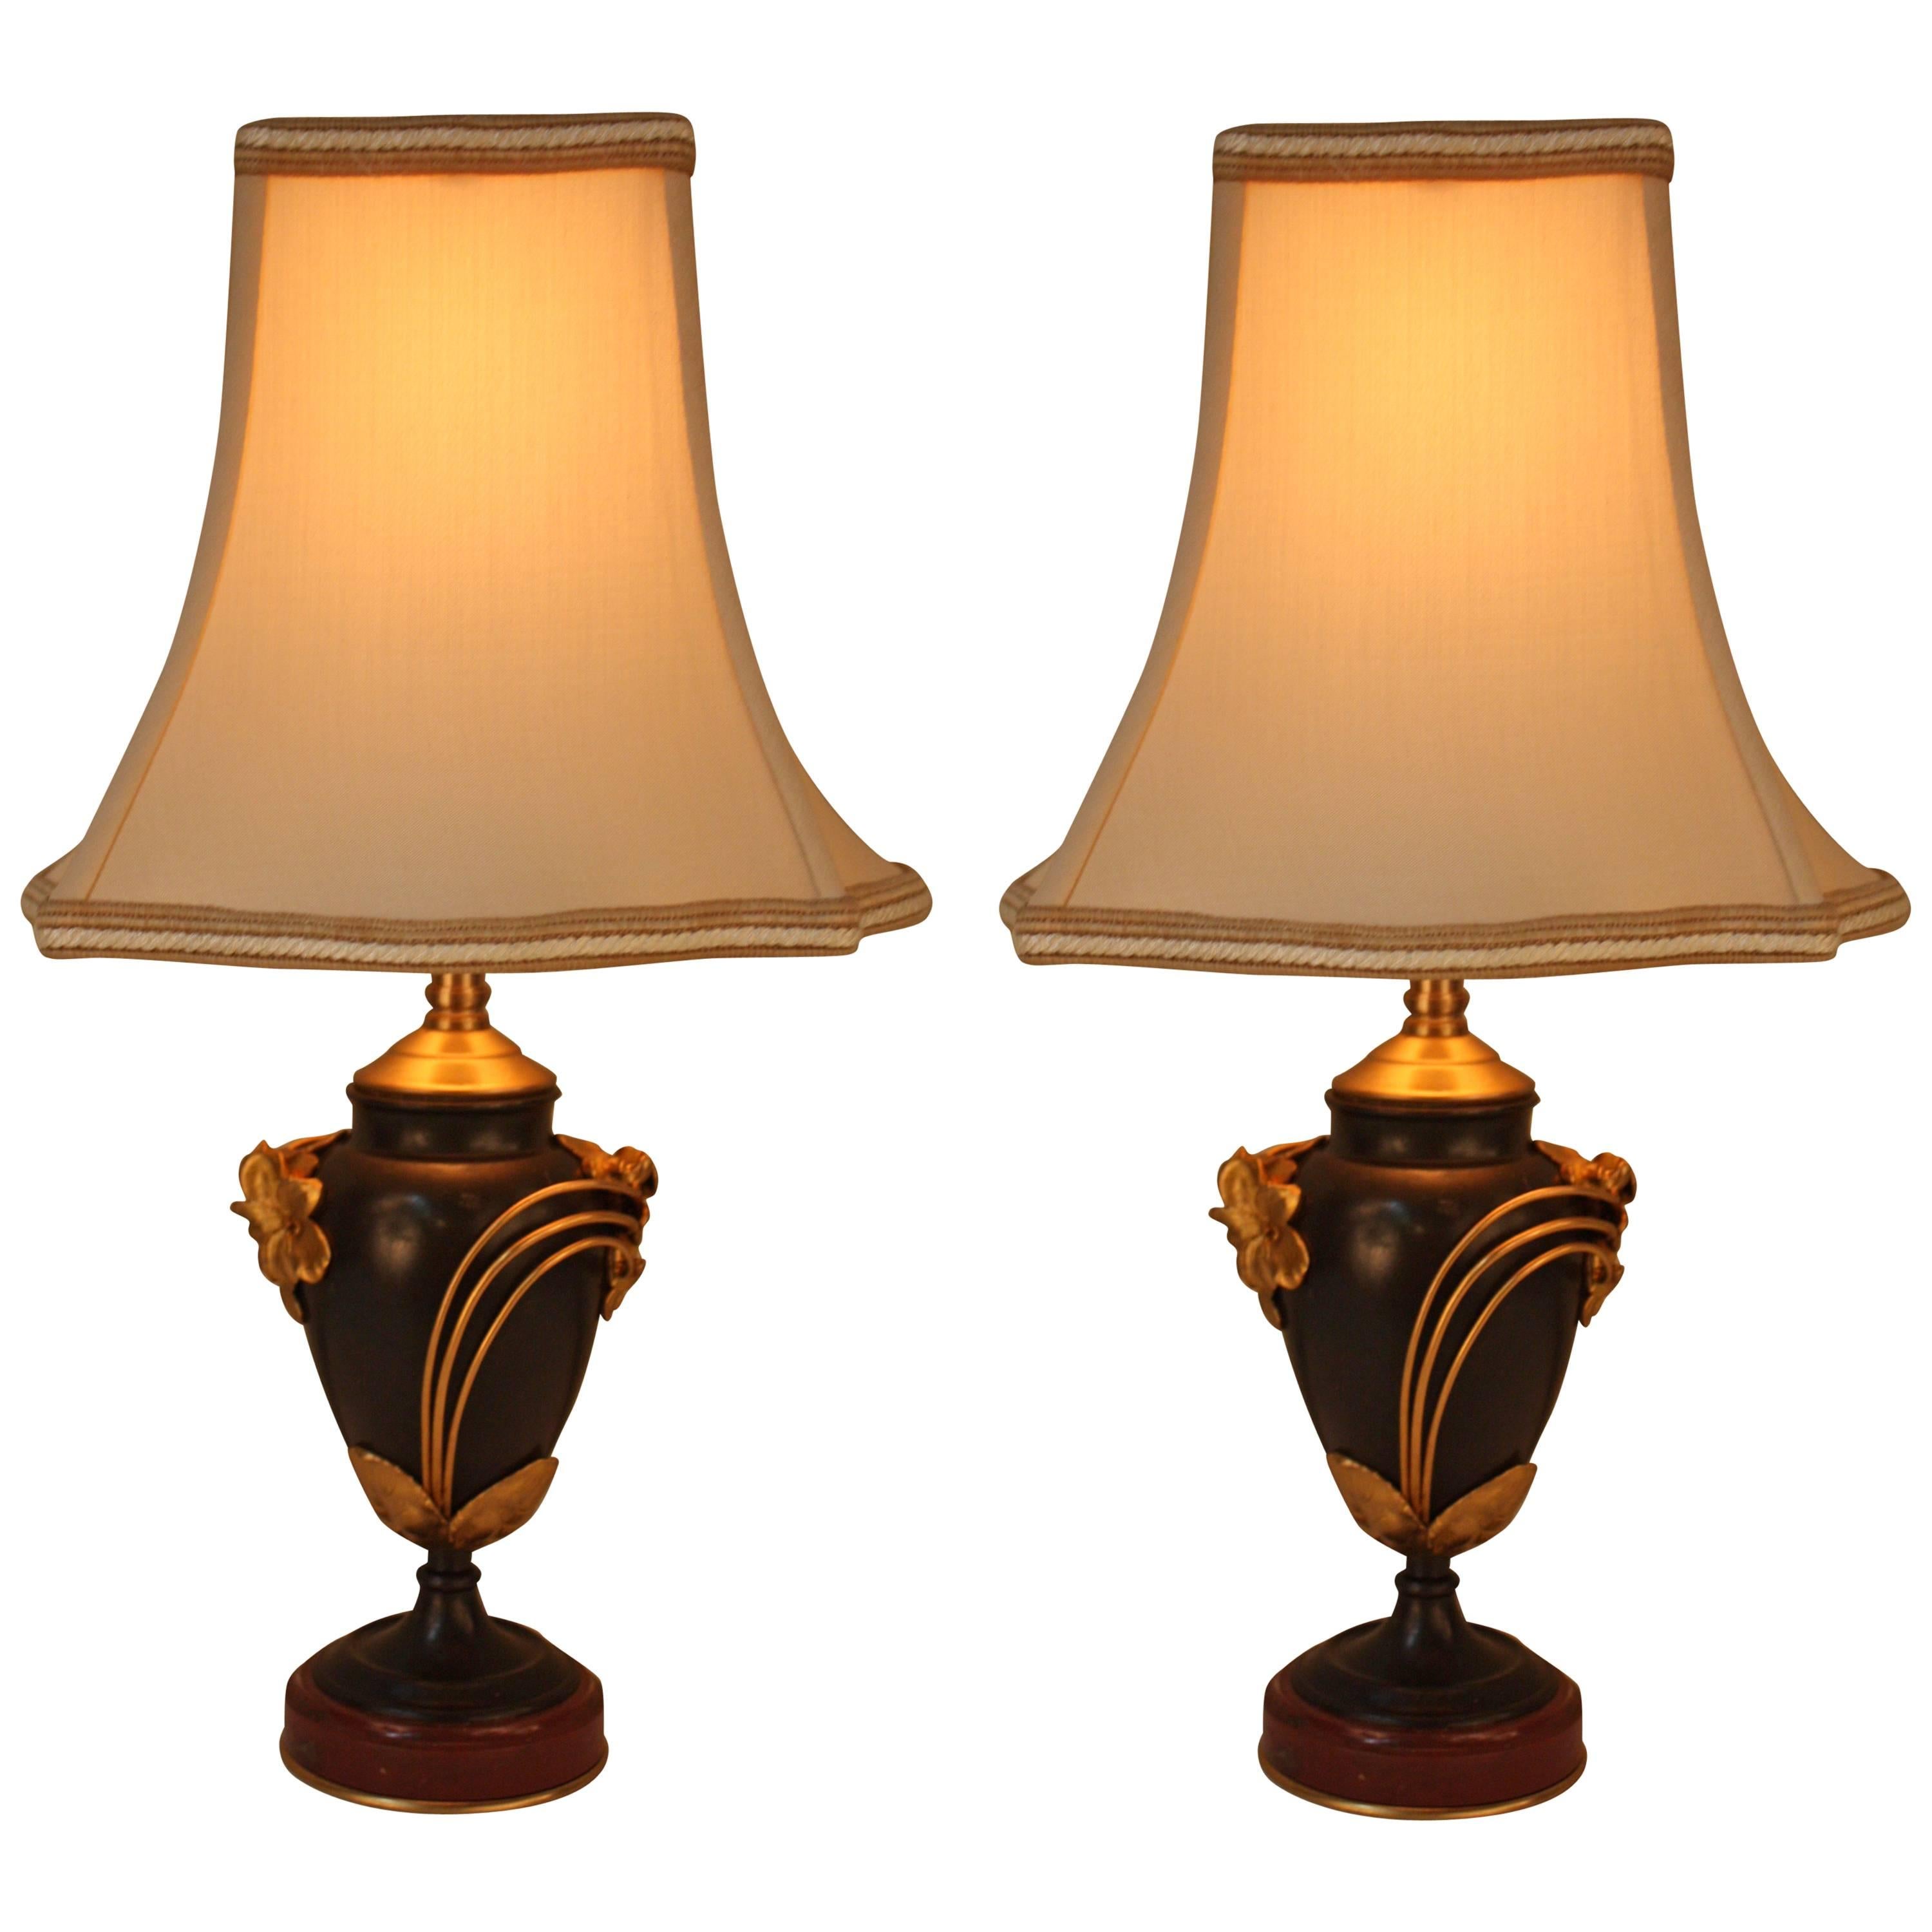 Pair of Art Nouveau Bronze Table Lamps by Fumiere Thiébaut Frès, Paris